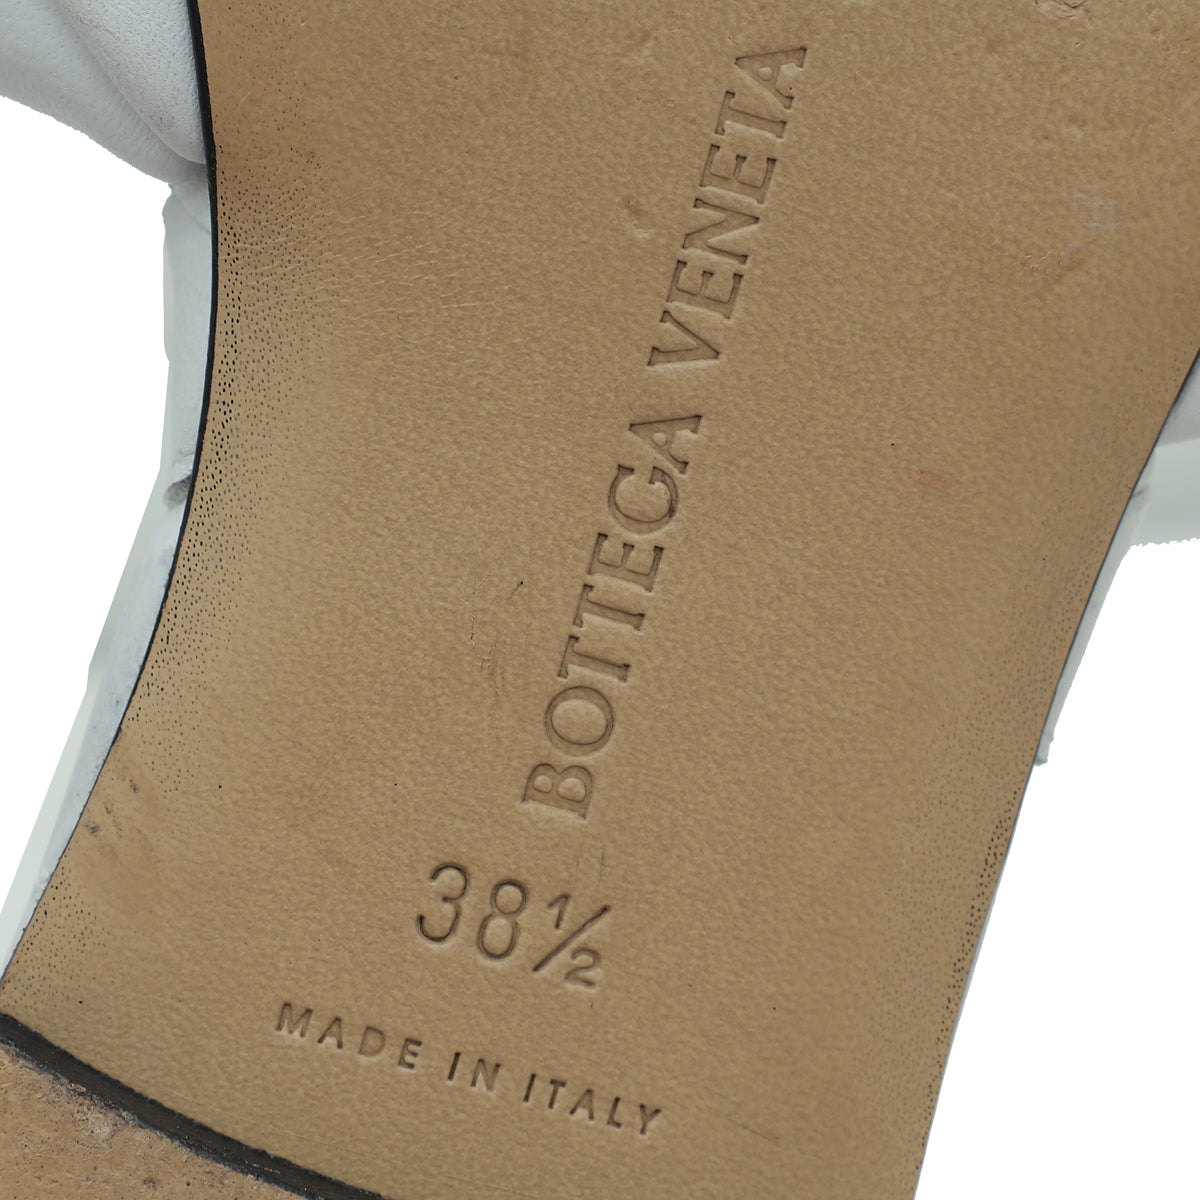 Bottega Veneta White Intrecciato Lido Flat Sandals 38.5